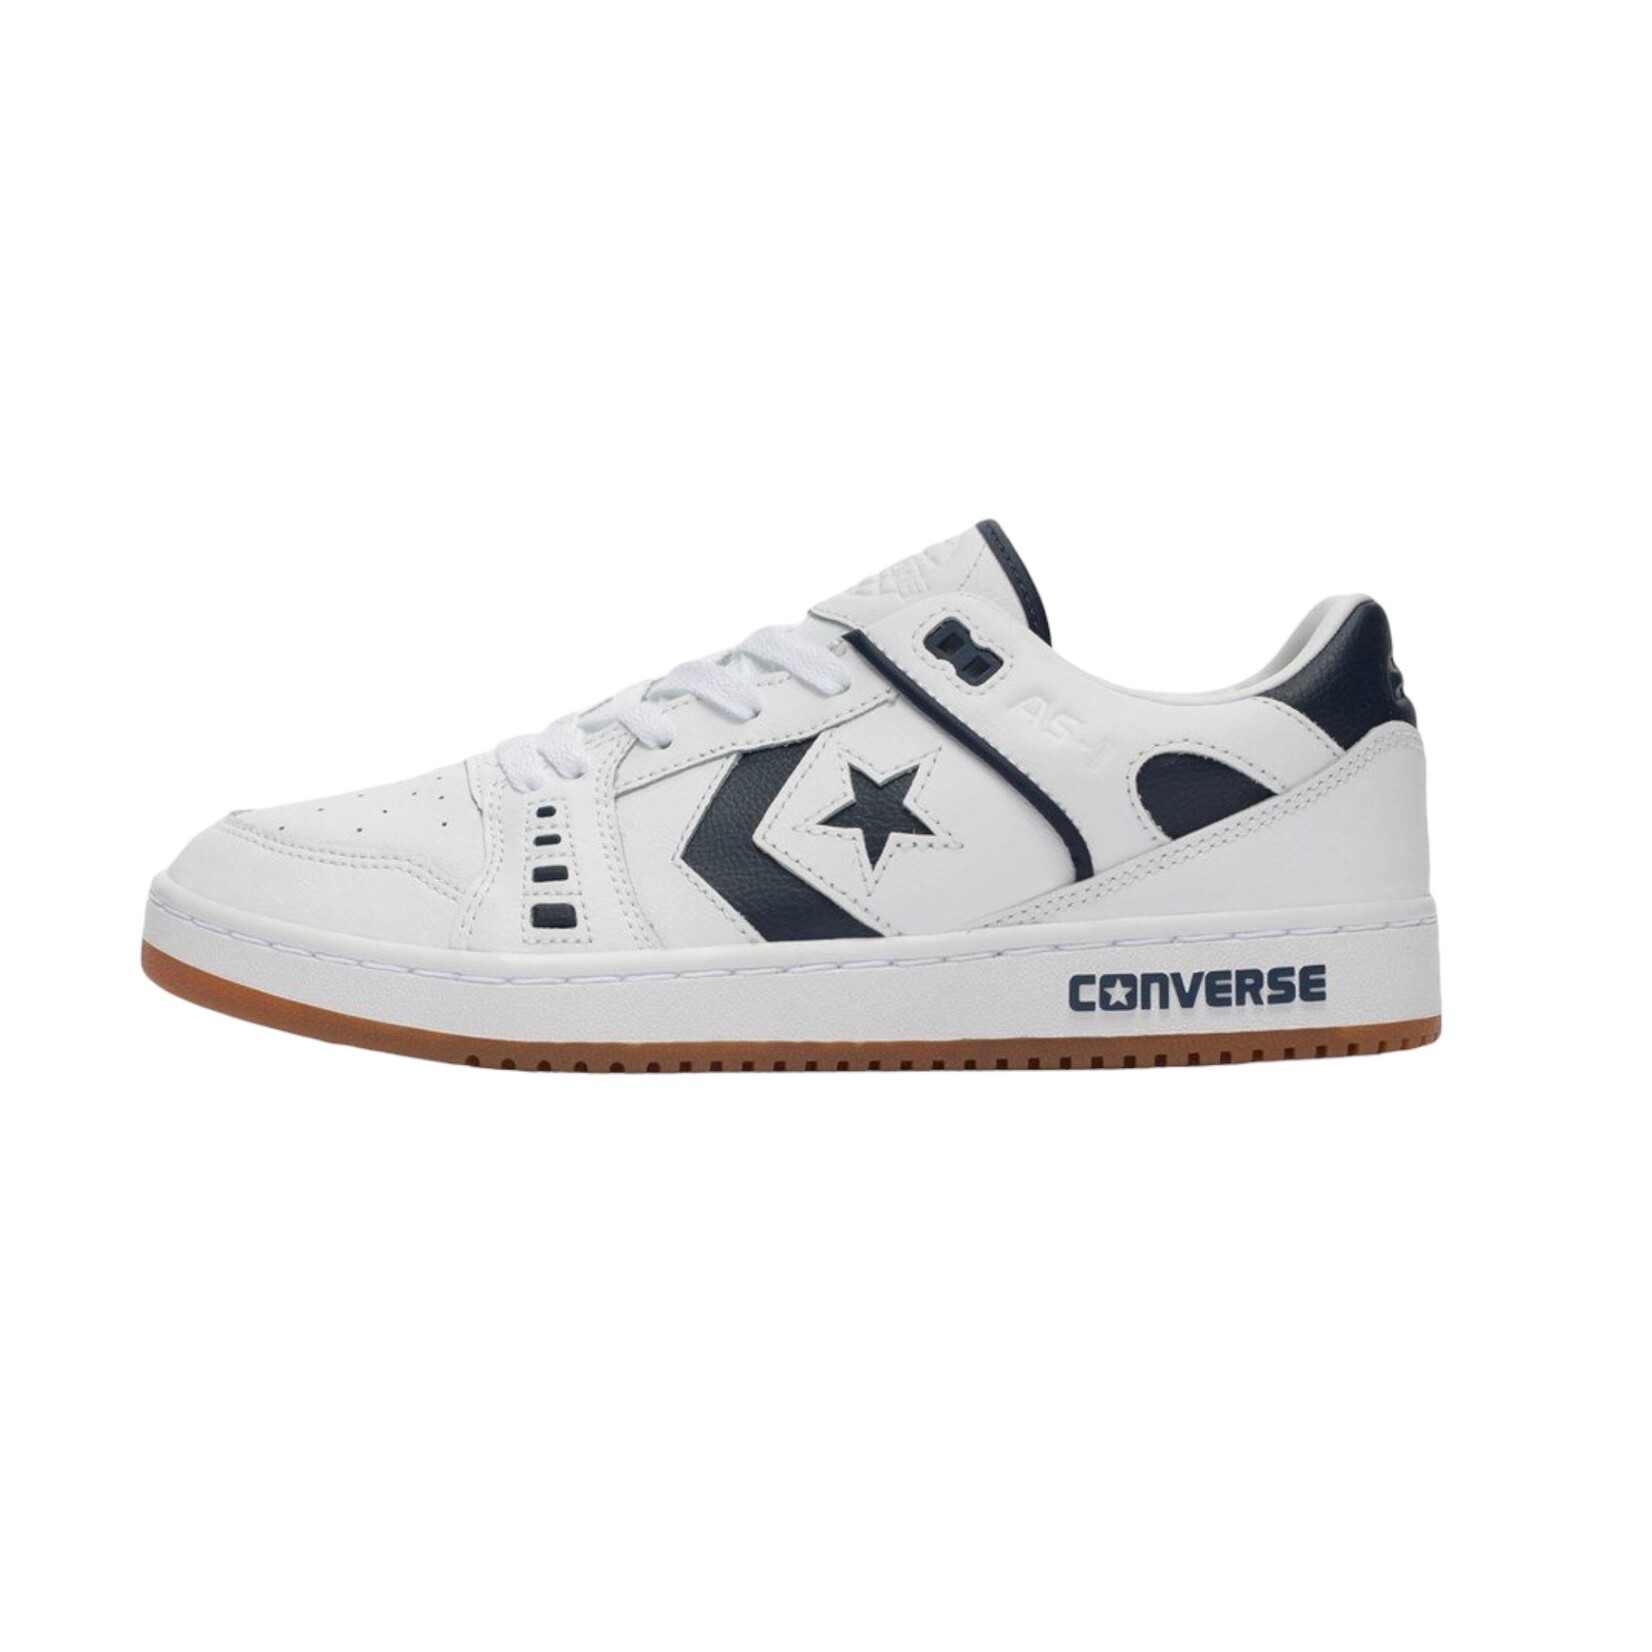 Converse Cons Converse CONS AS-1 Pro White/Navy/Gum